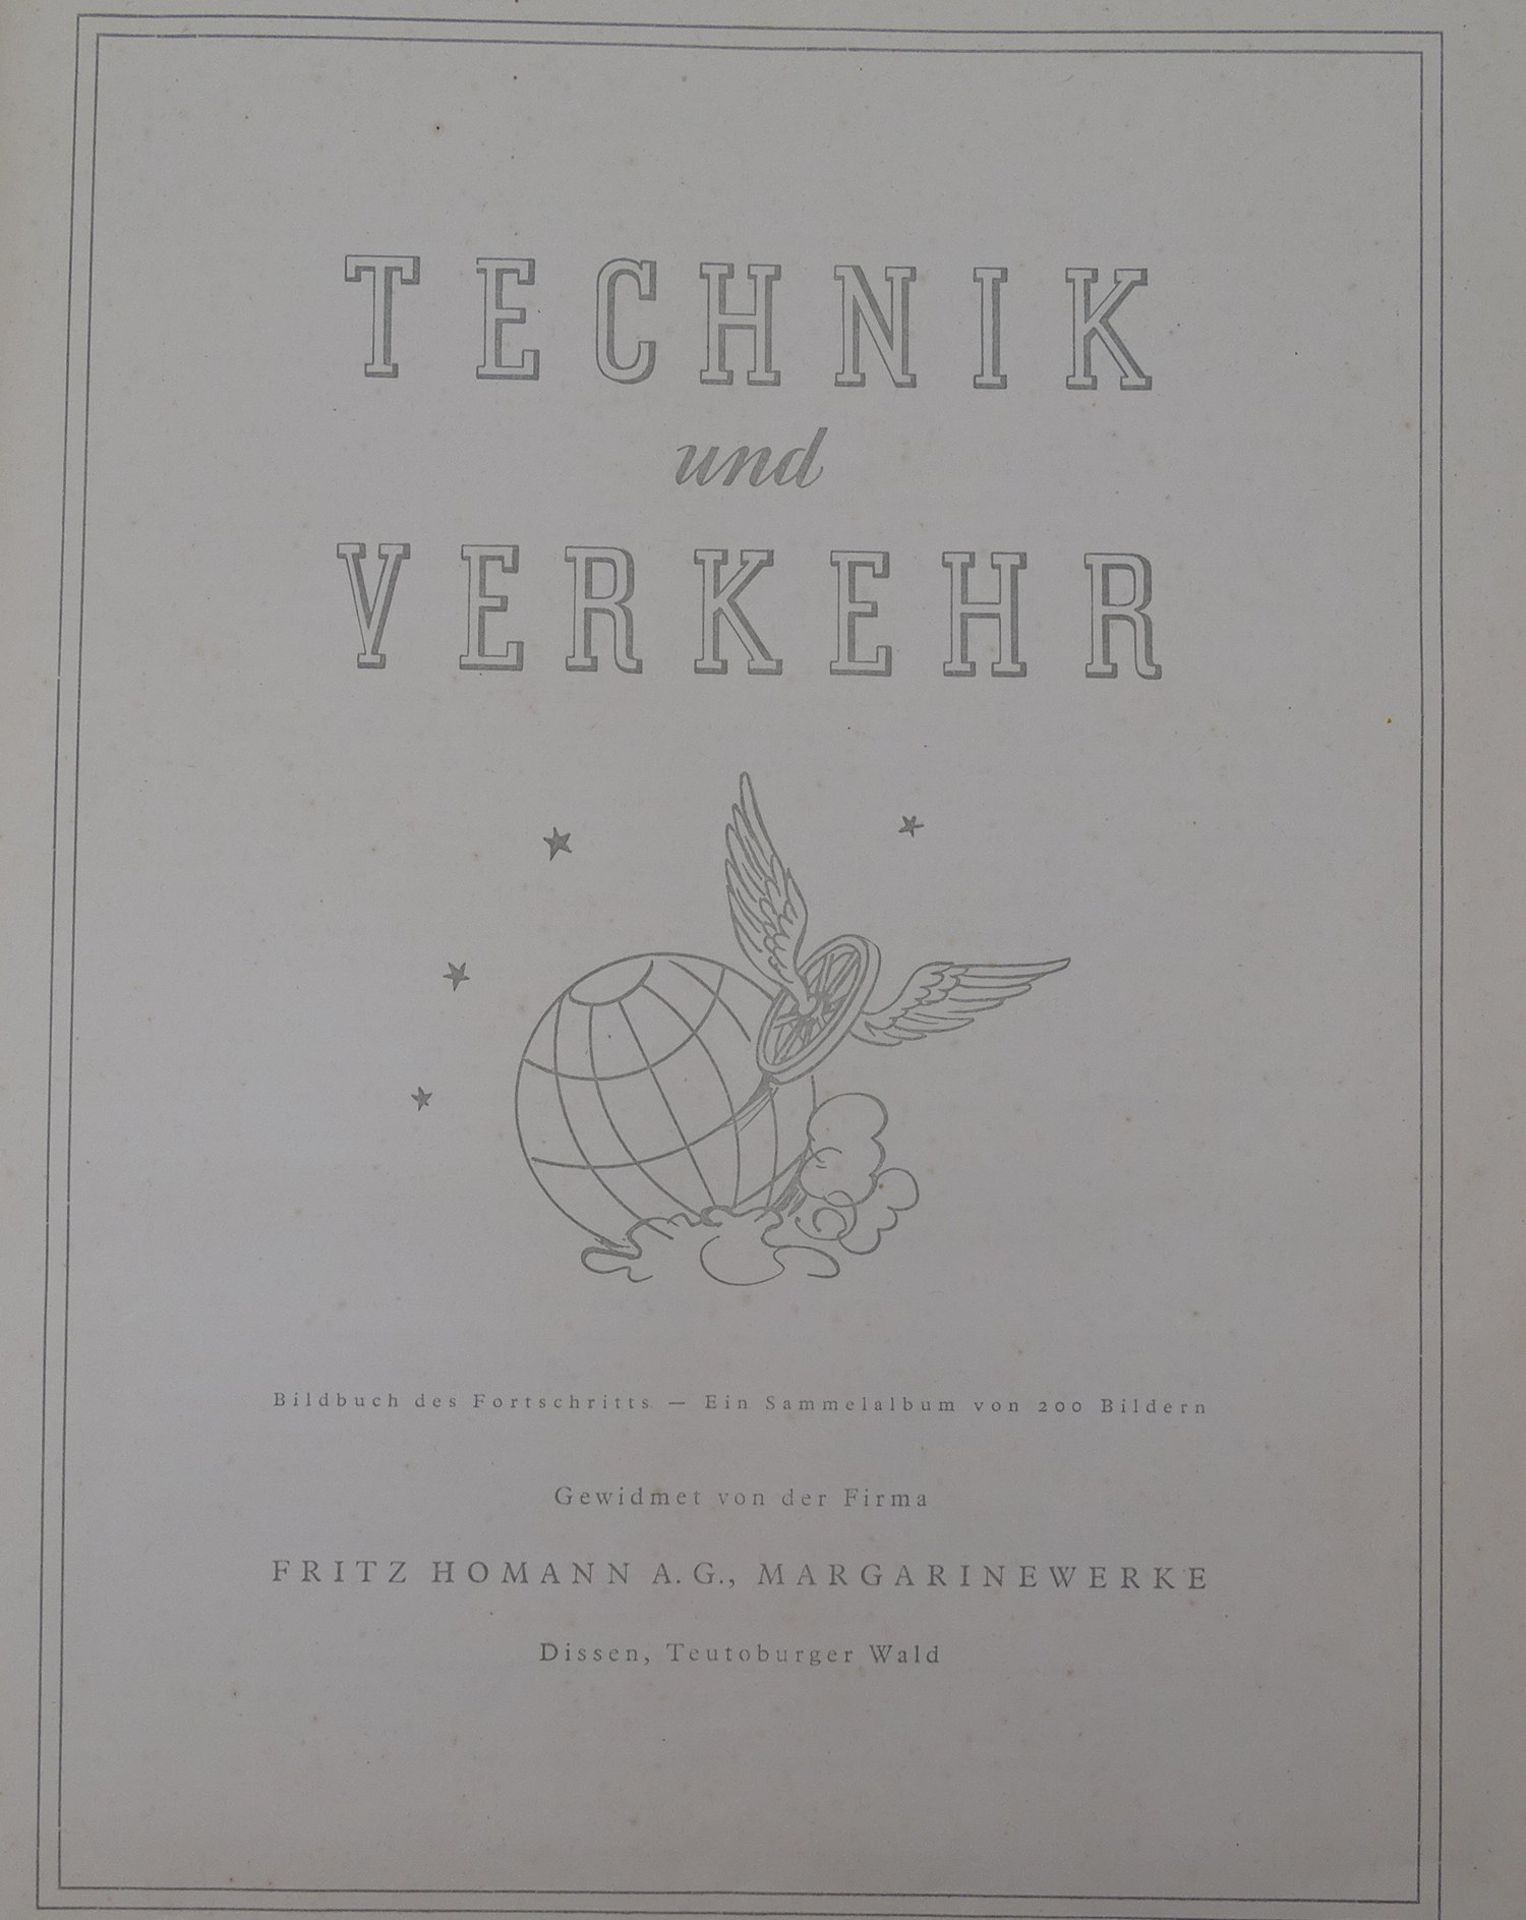 Sammelbilder Album Technik und Verkehr 1876 - 1951 - Bild 2 aus 5